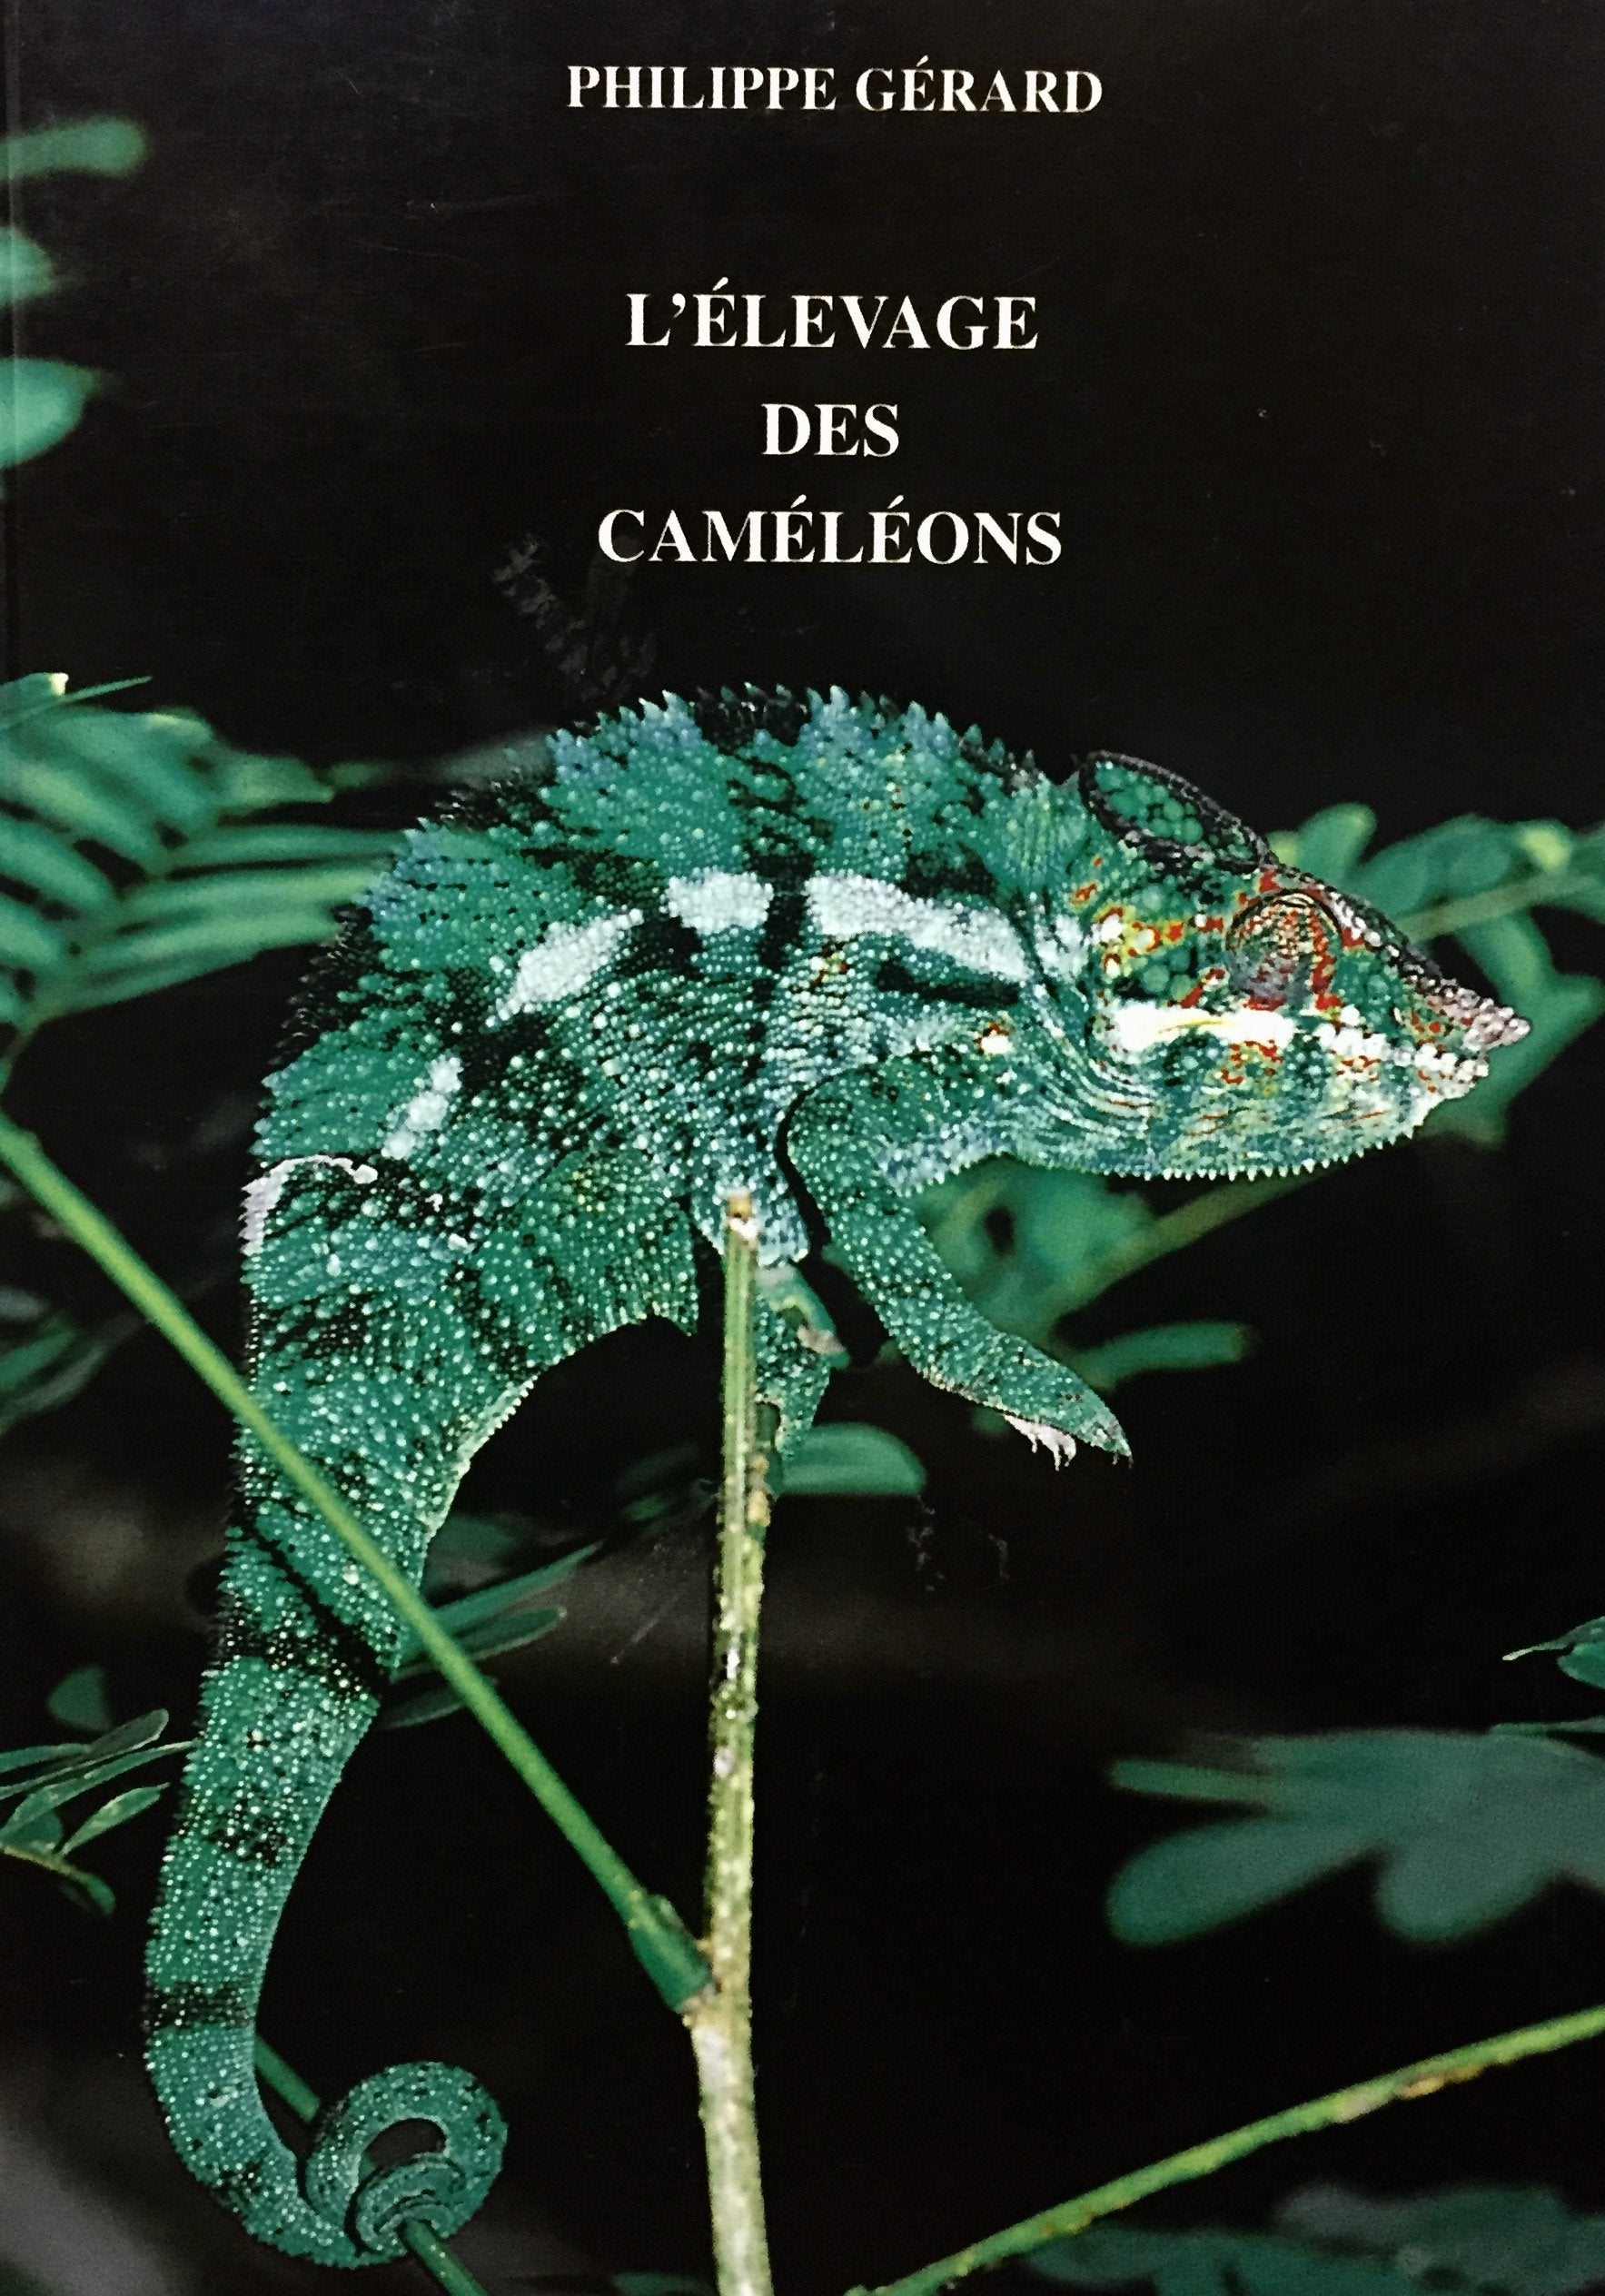 Livre ISBN 2912521114 L'élevage des cameleons (Philippe Gérard)